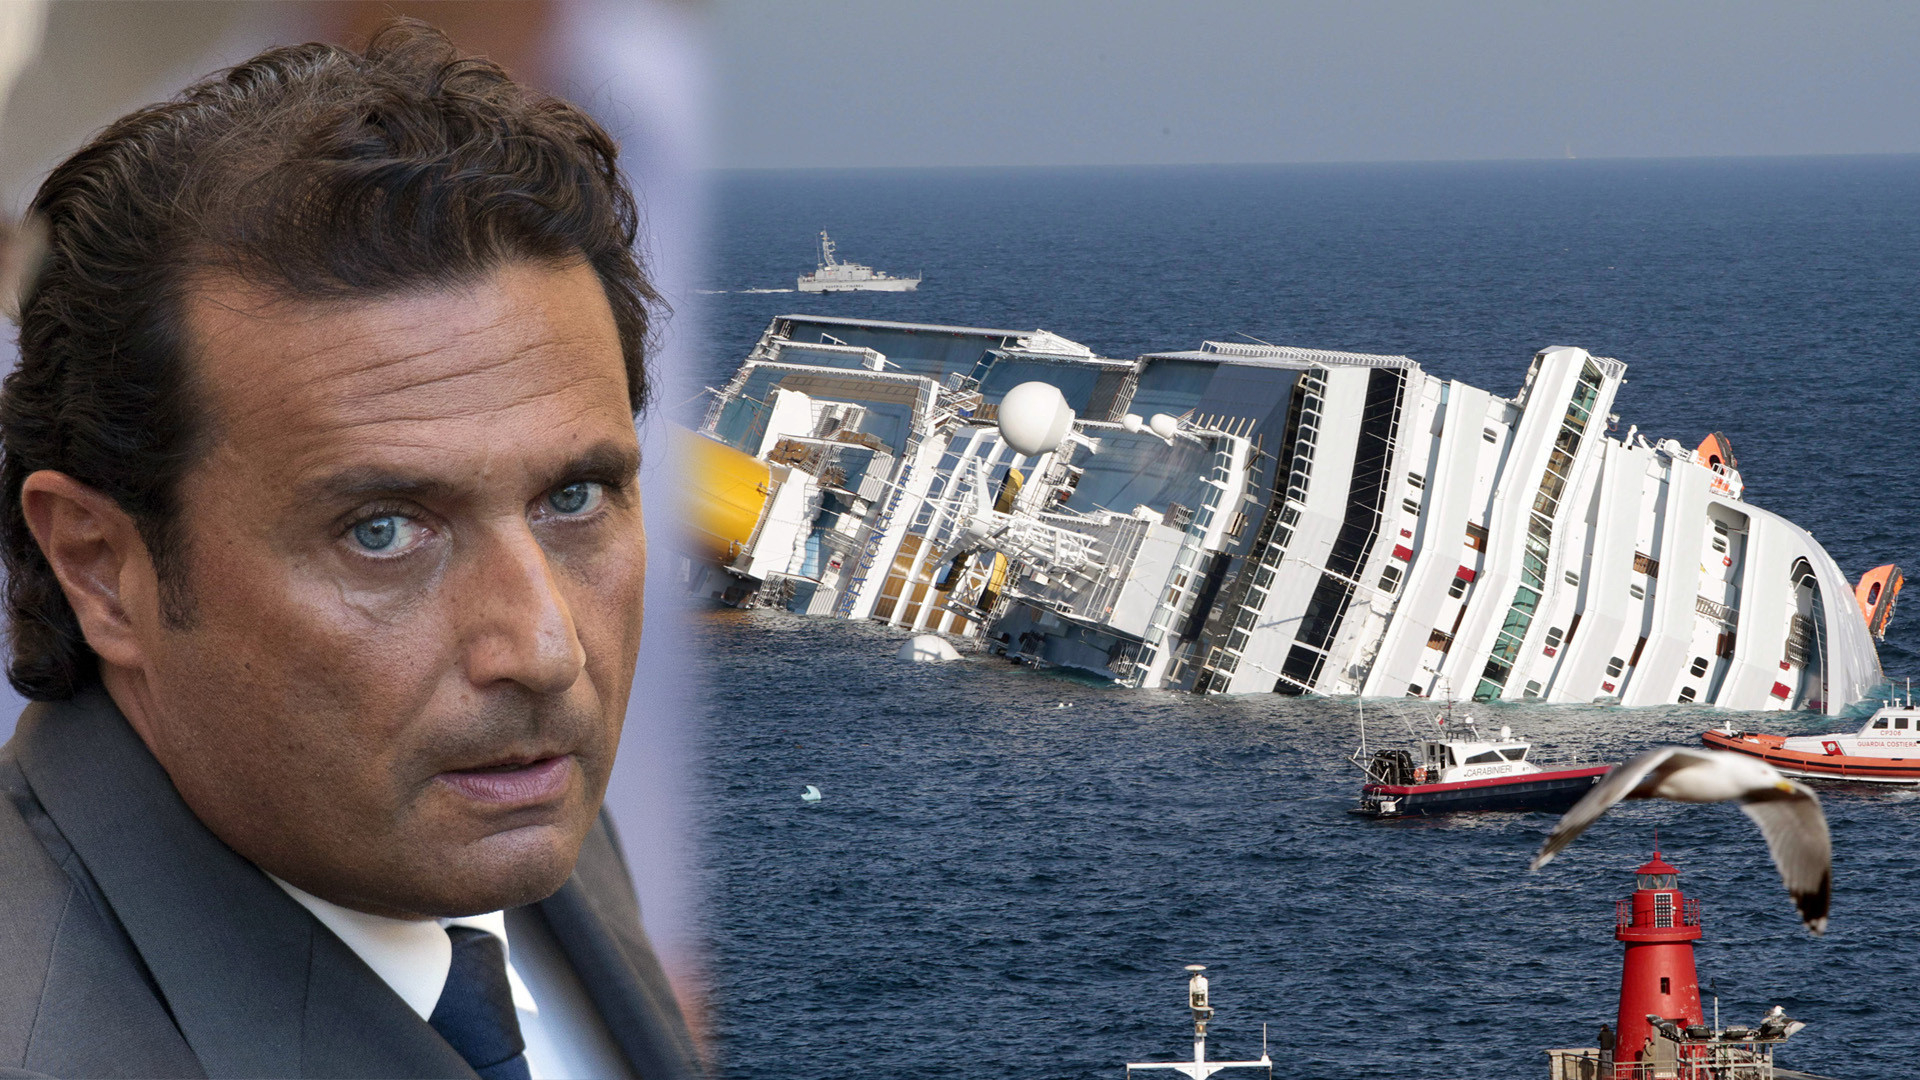 Опубликовано ВИДЕО с мостика Costa Concordia: капитан в панике и не знает, что делать